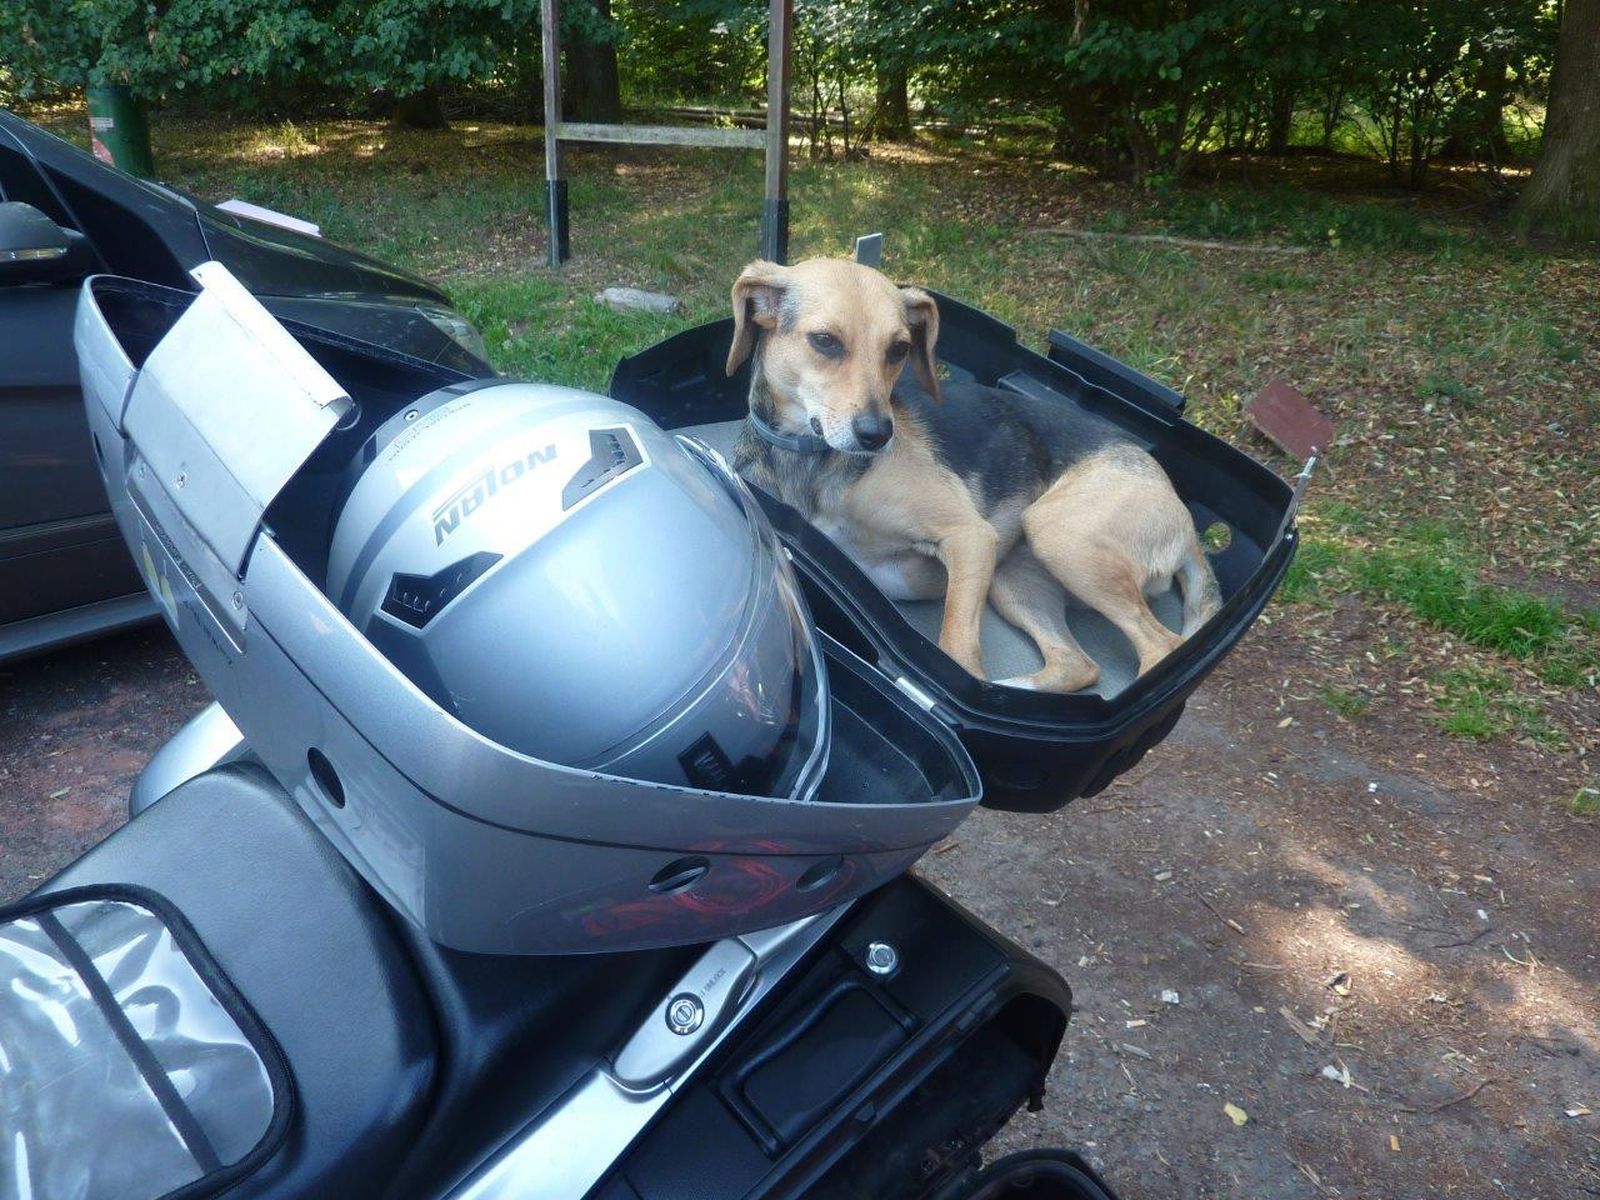 Ein braun-grauer kleiner Hund liegt eingerollt in einer offenen Hundebox auf dem Gepäcktträger eines Motorrads